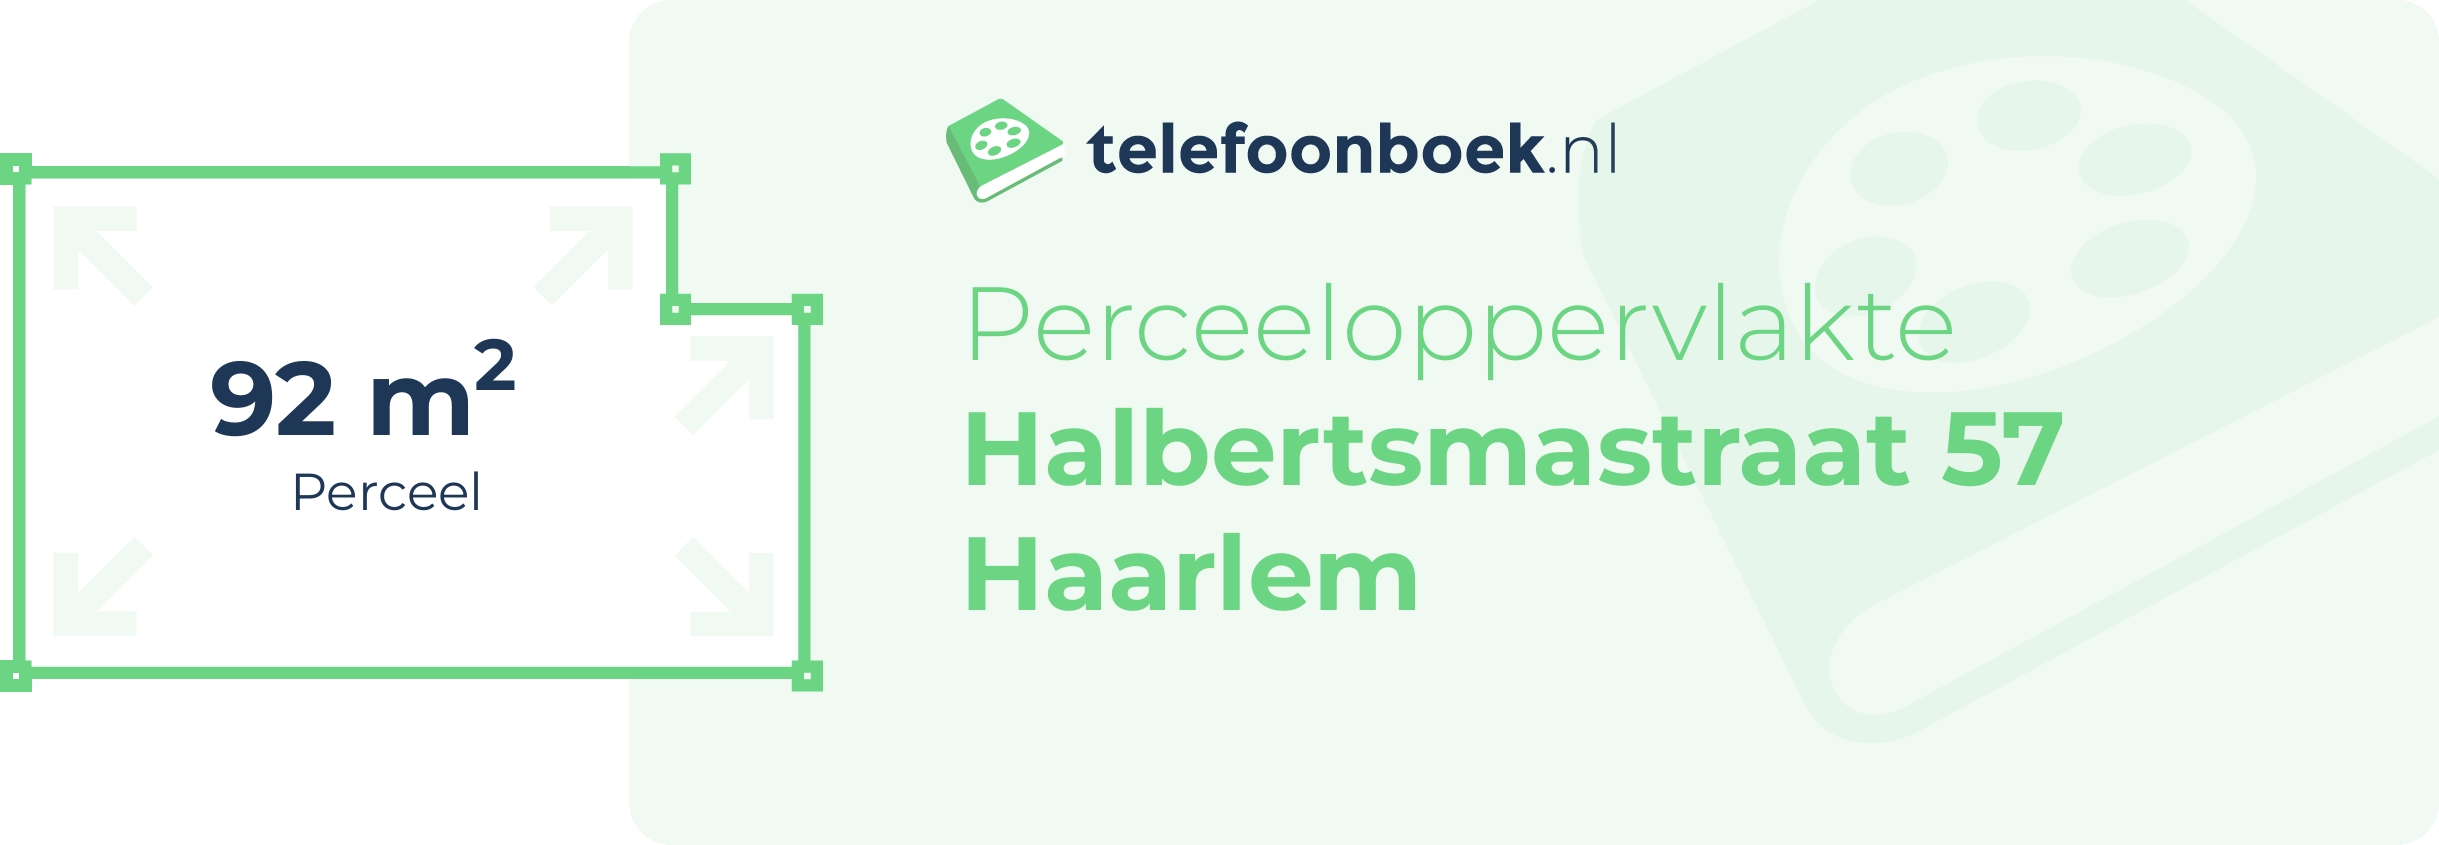 Perceeloppervlakte Halbertsmastraat 57 Haarlem